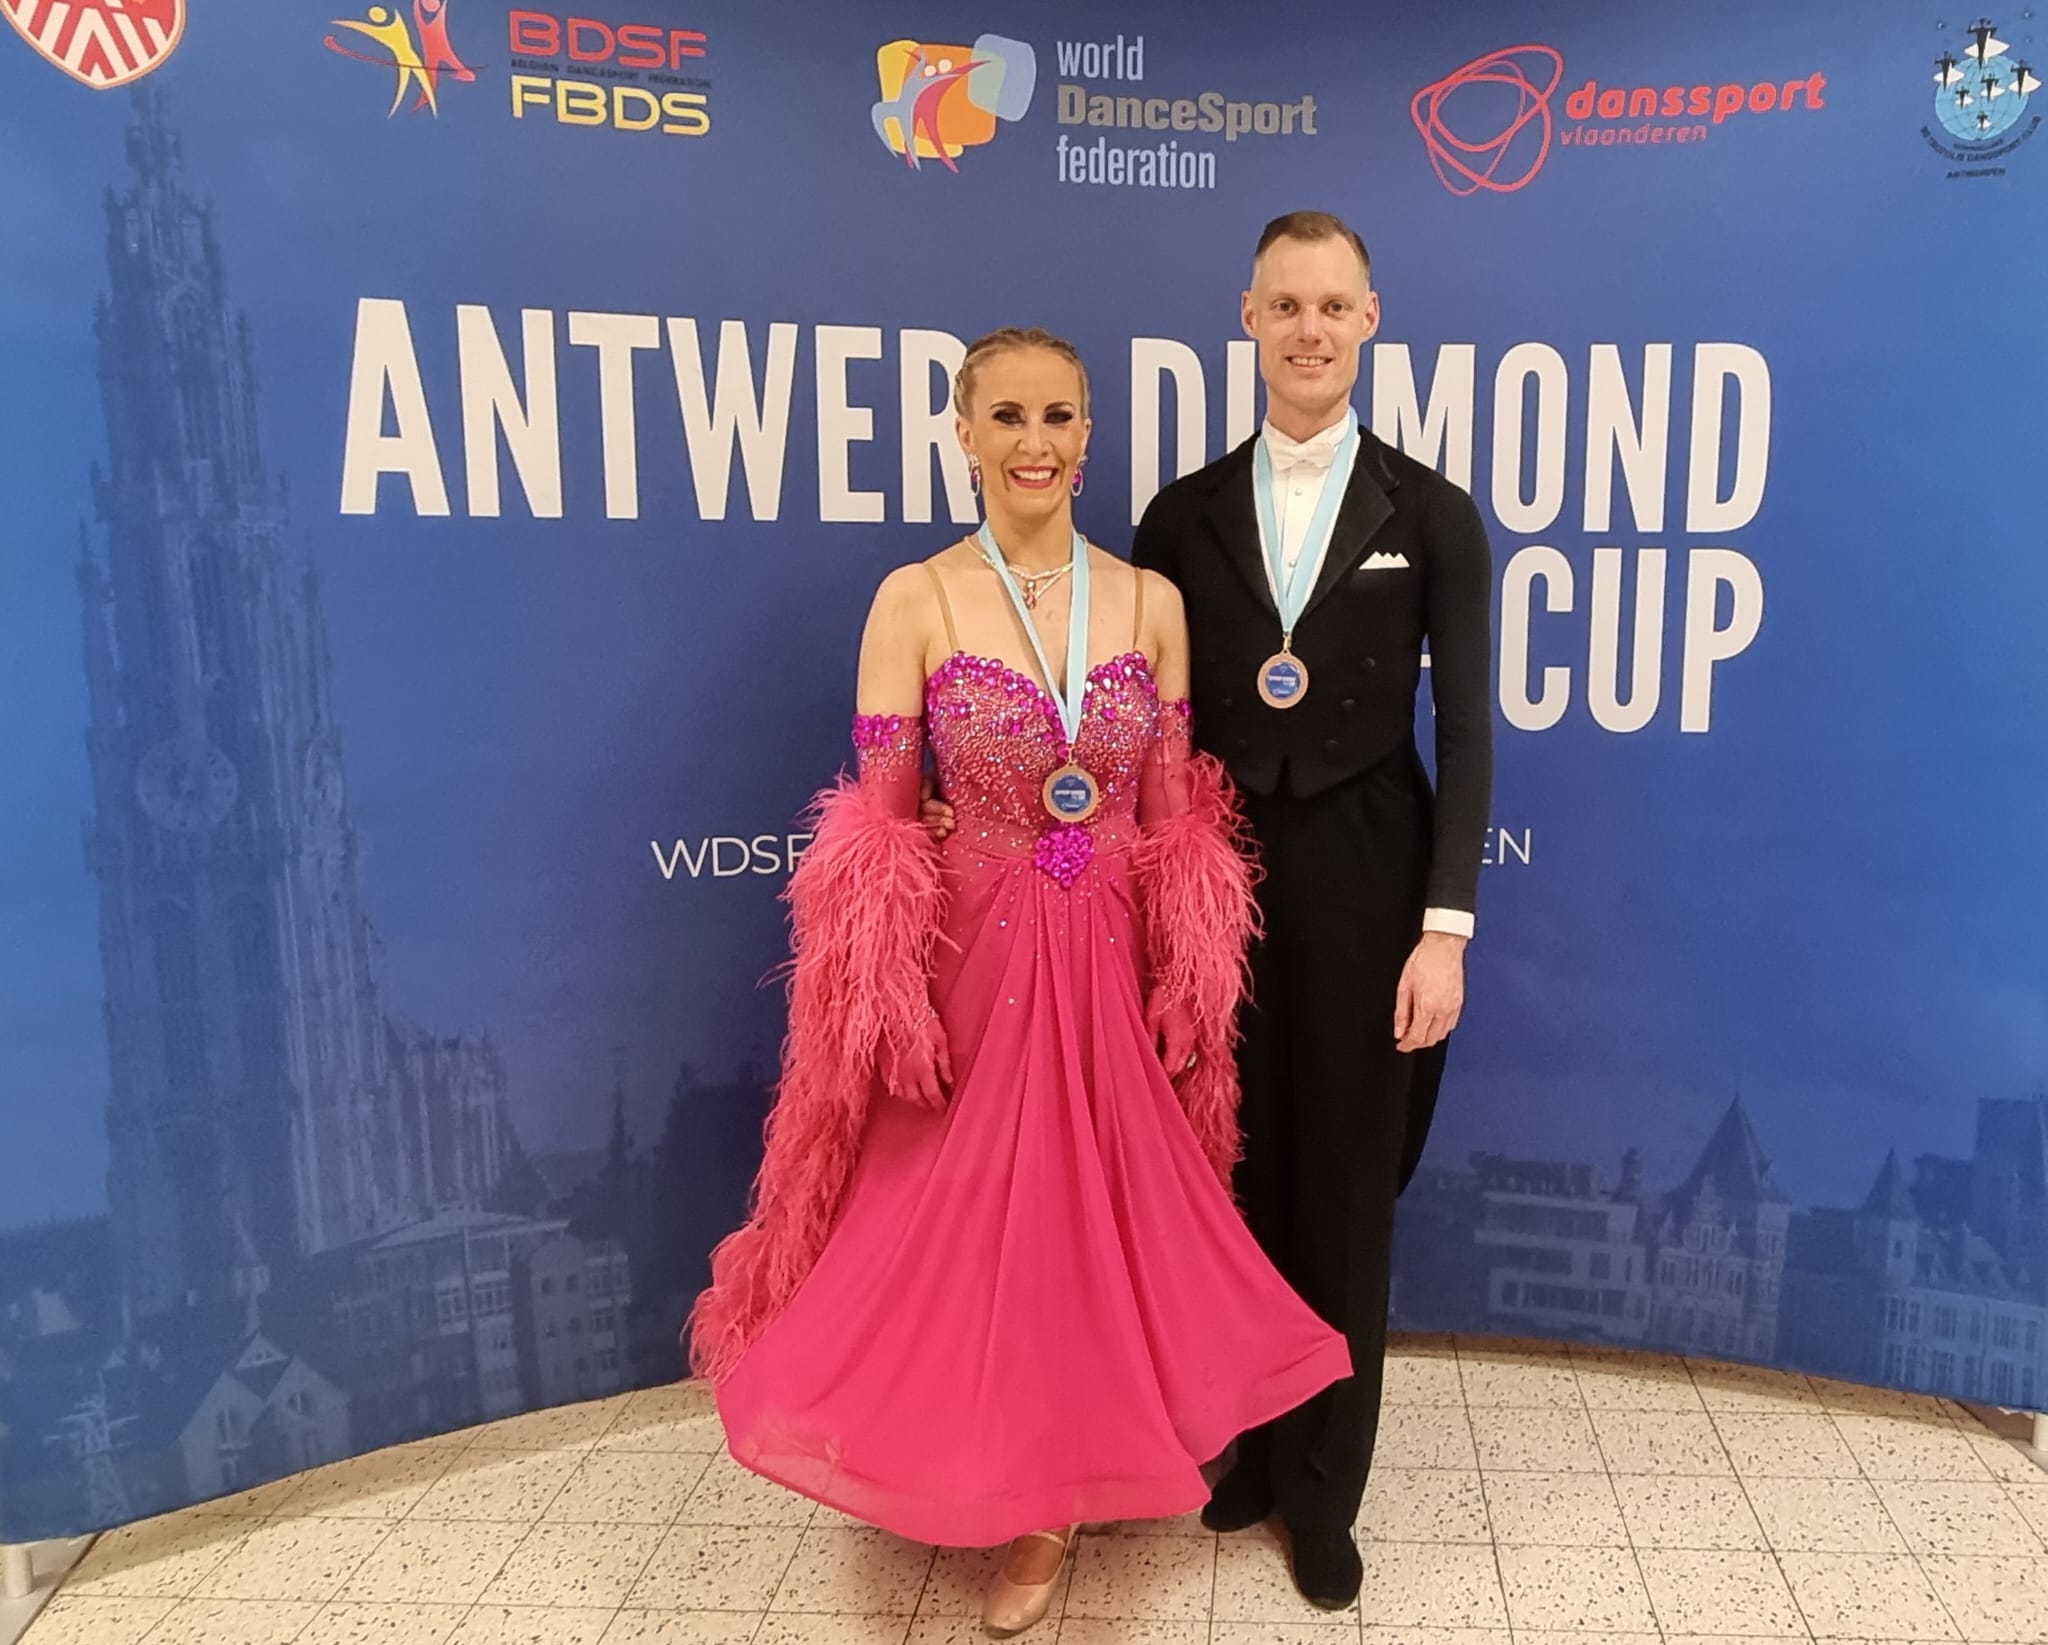 Grün-Gold-Paare auf internationalem Parkett in Antwerpen erfolgreich